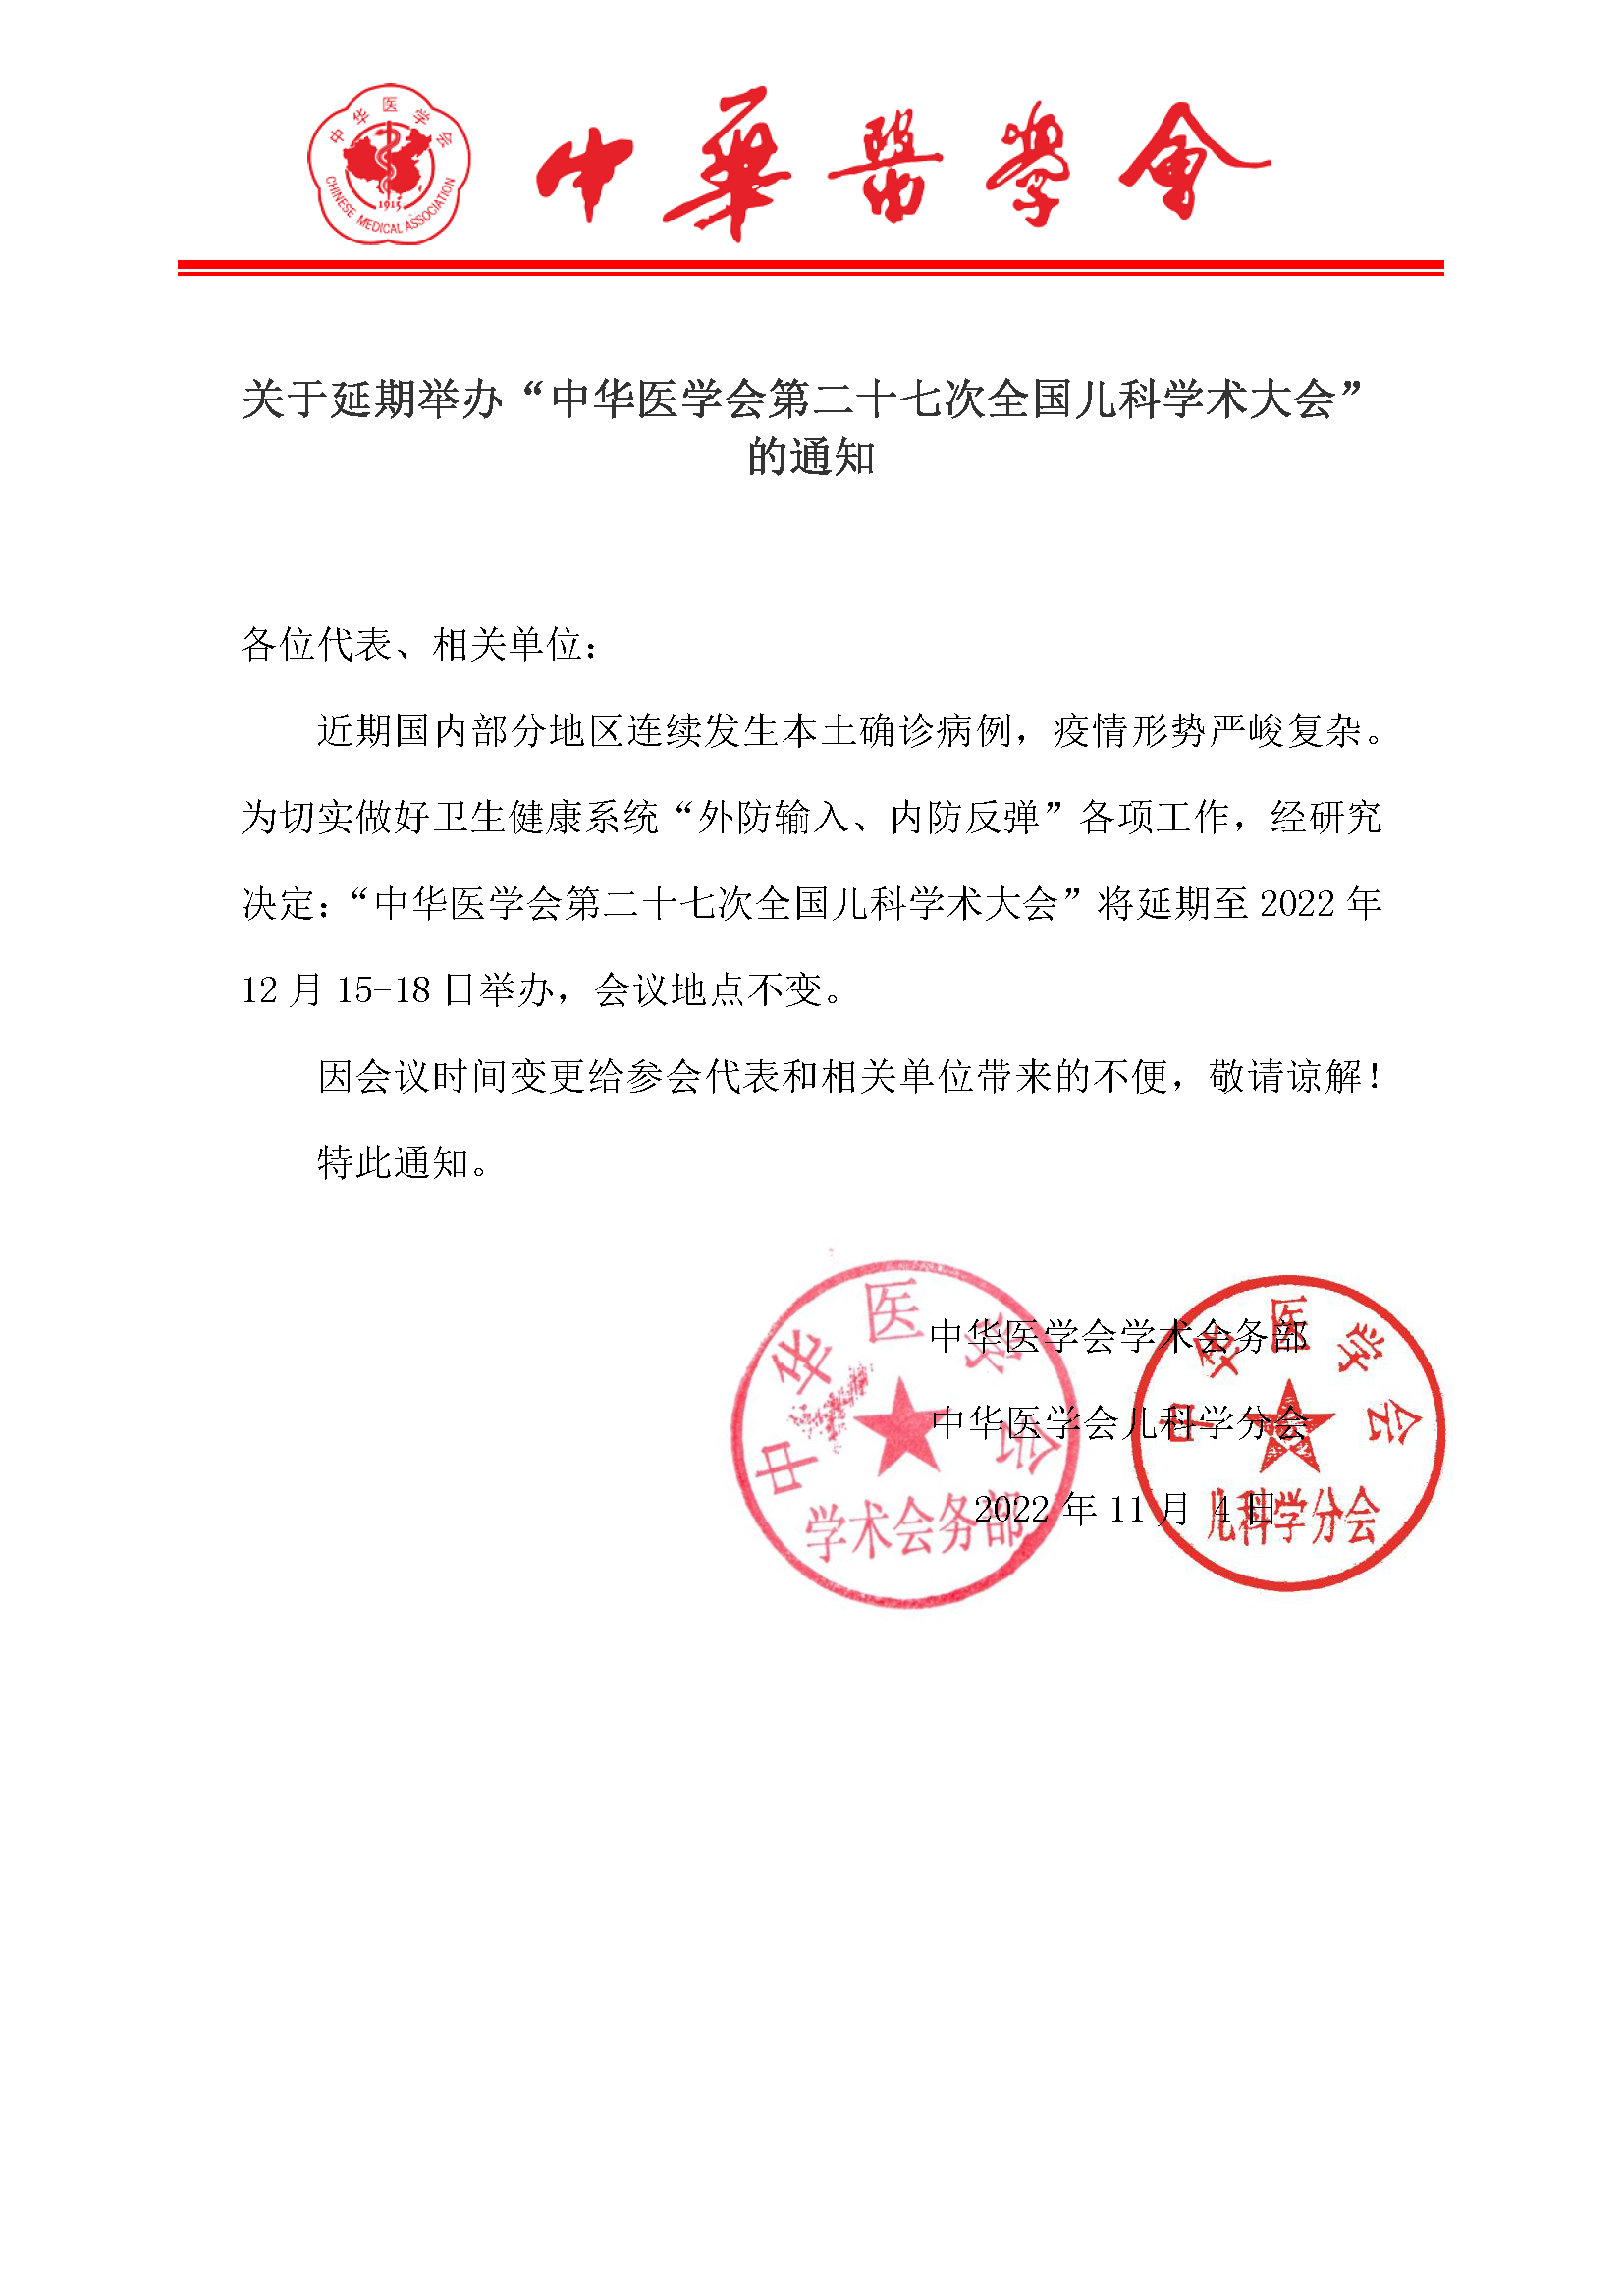 中华医学会第二十七次全国儿科学术大会延期通知11.4.png